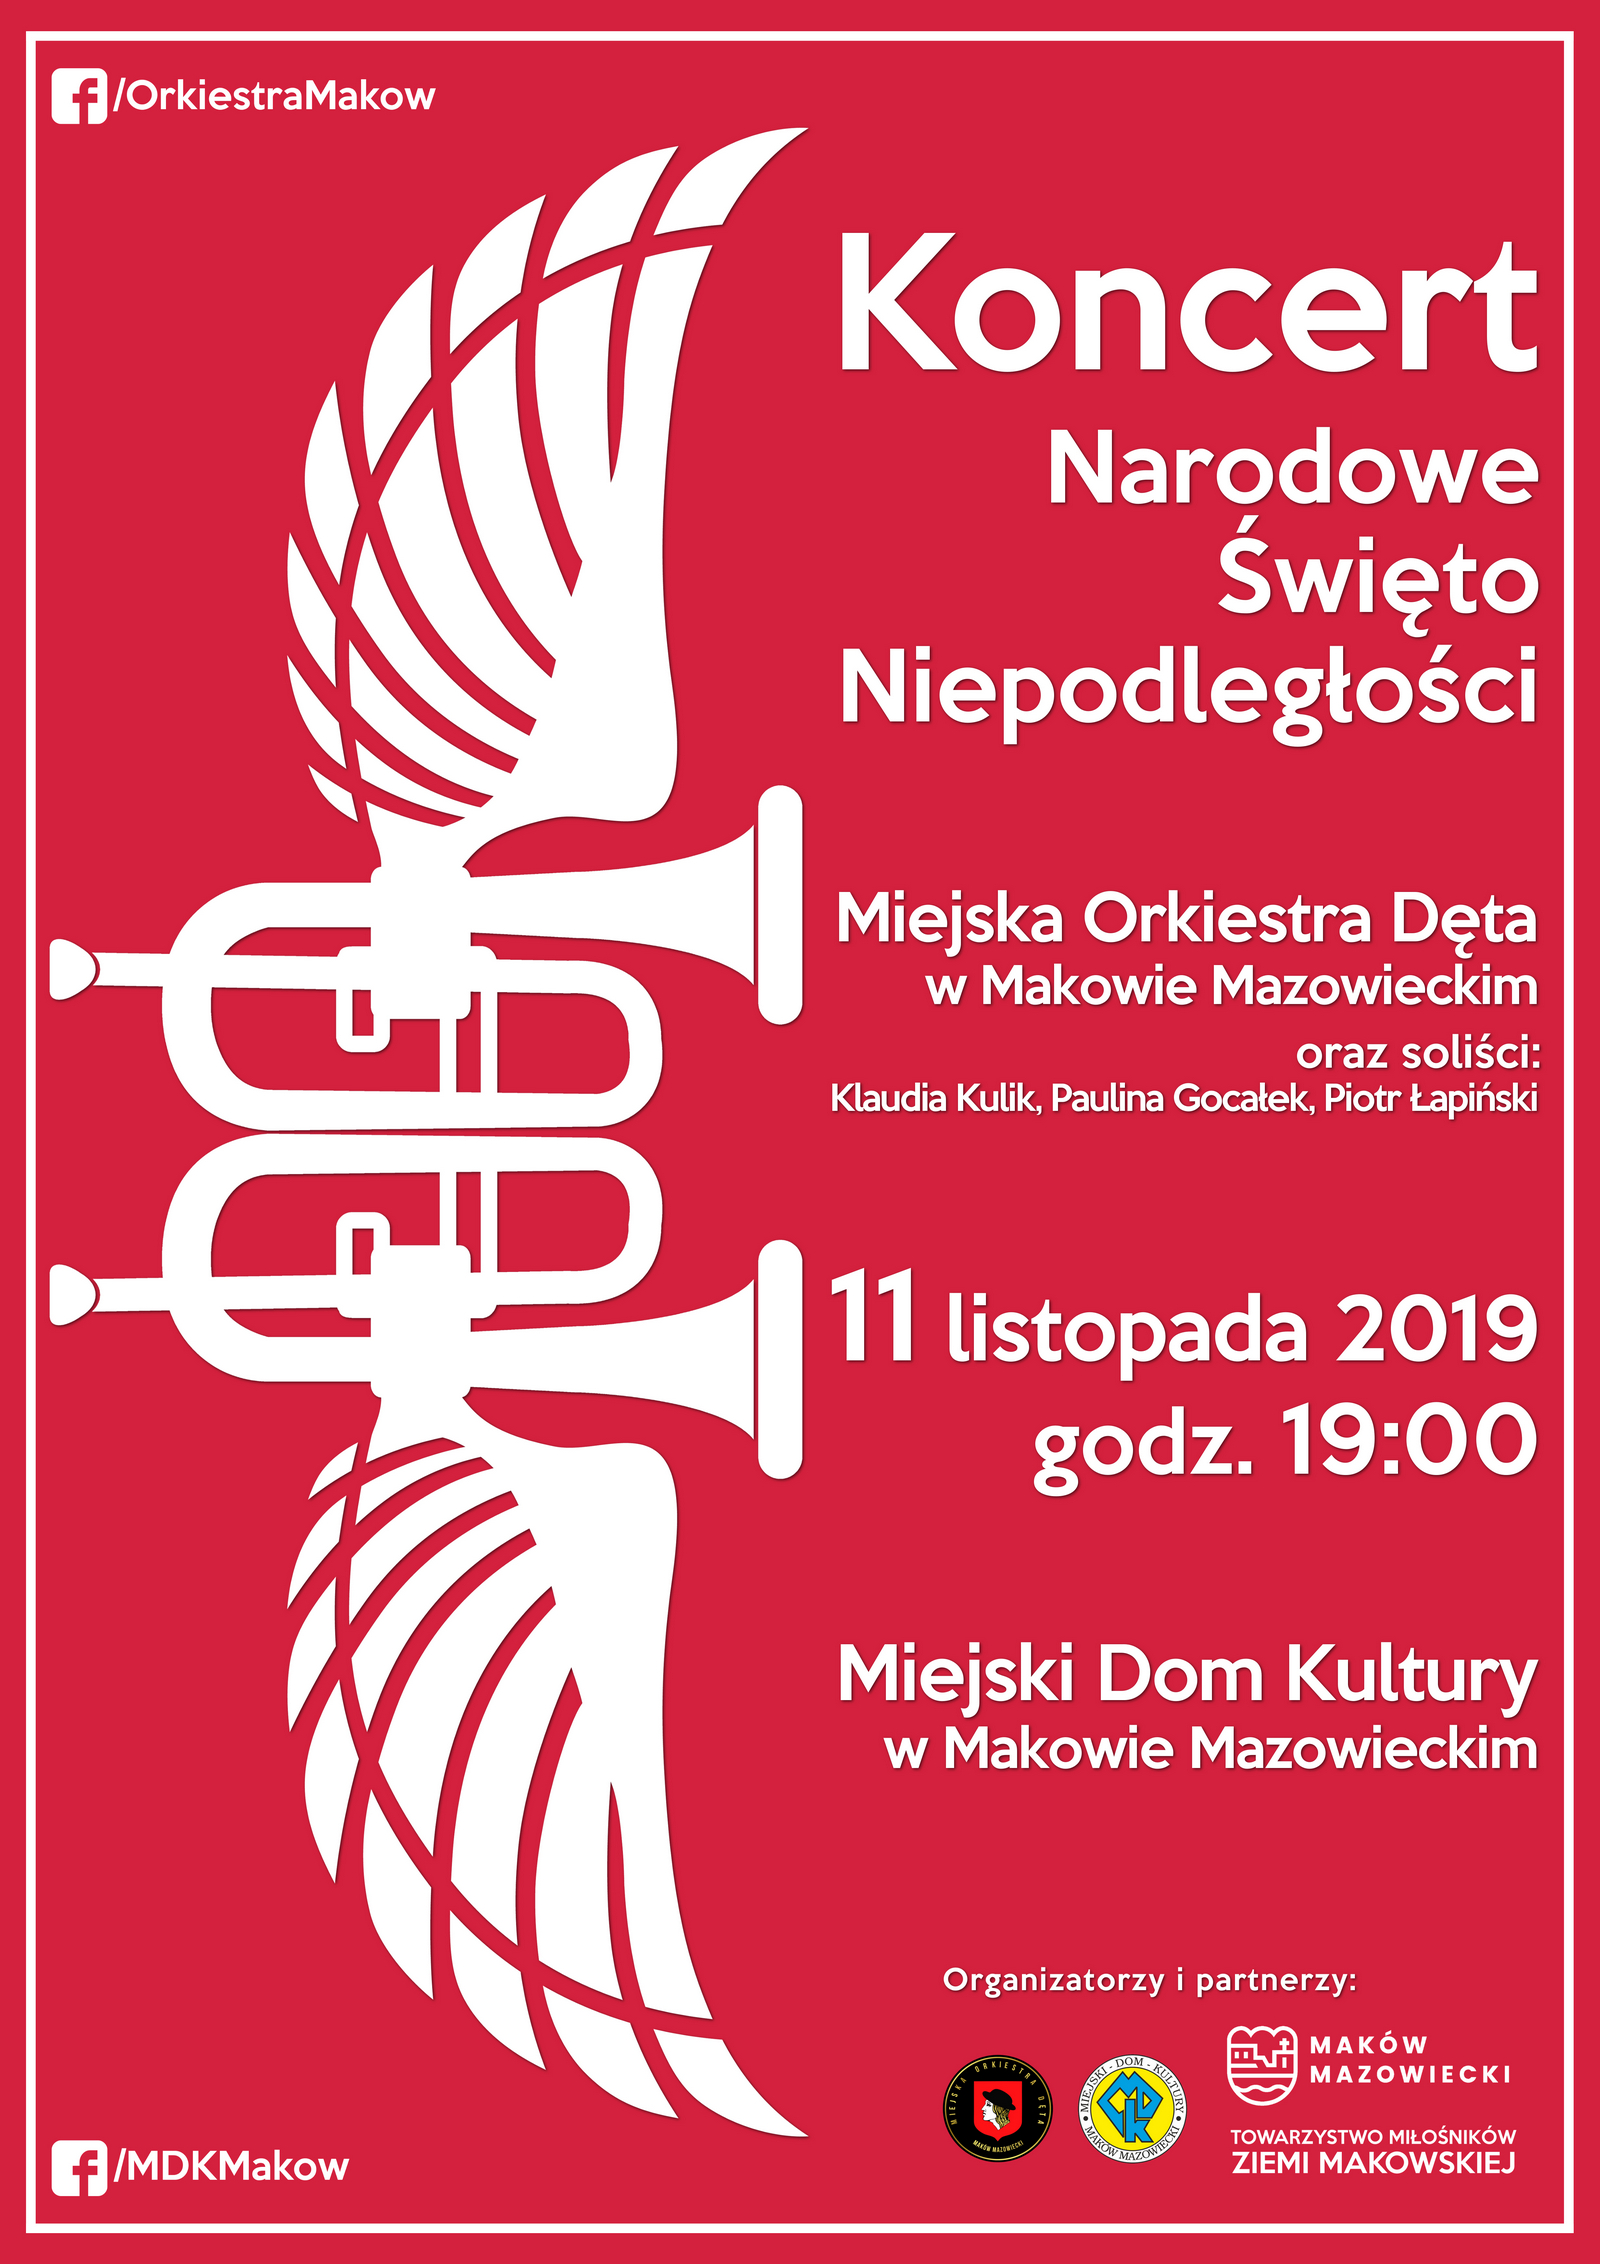 Plakat. Koncert Narodowe Święto Niepodległości. 11 listopada 2019 godzina 19:00